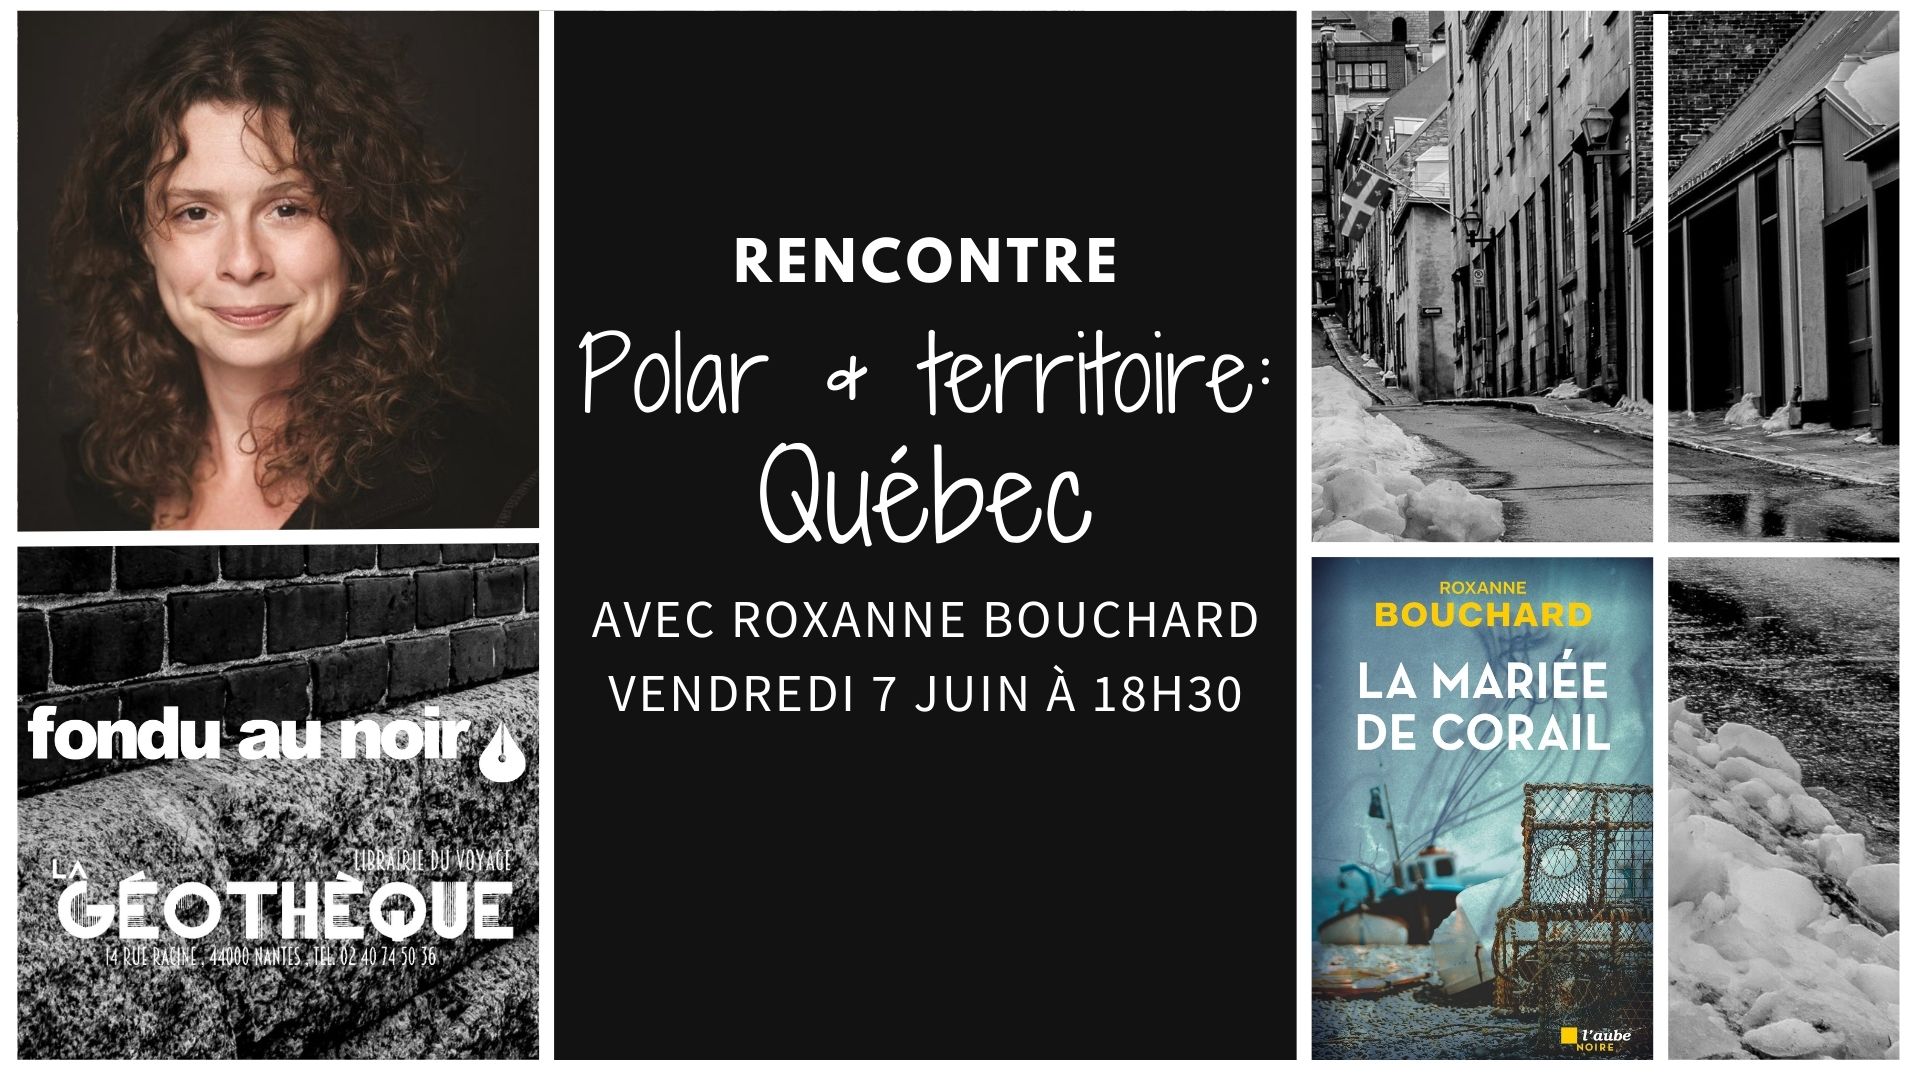 Polar & territoire épisode 3 Québec